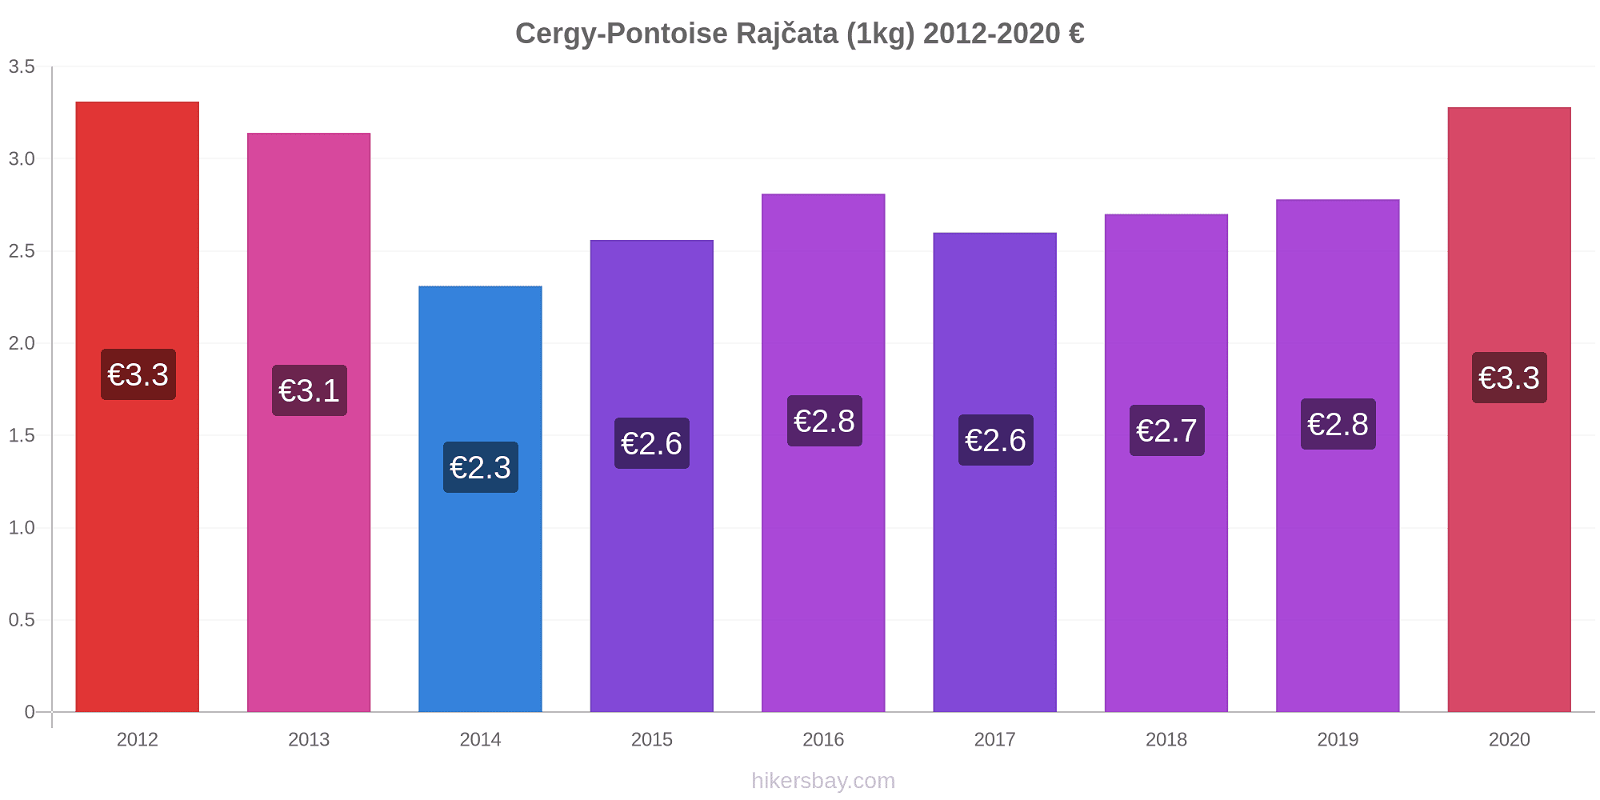 Cergy-Pontoise změny cen Rajčata (1kg) hikersbay.com